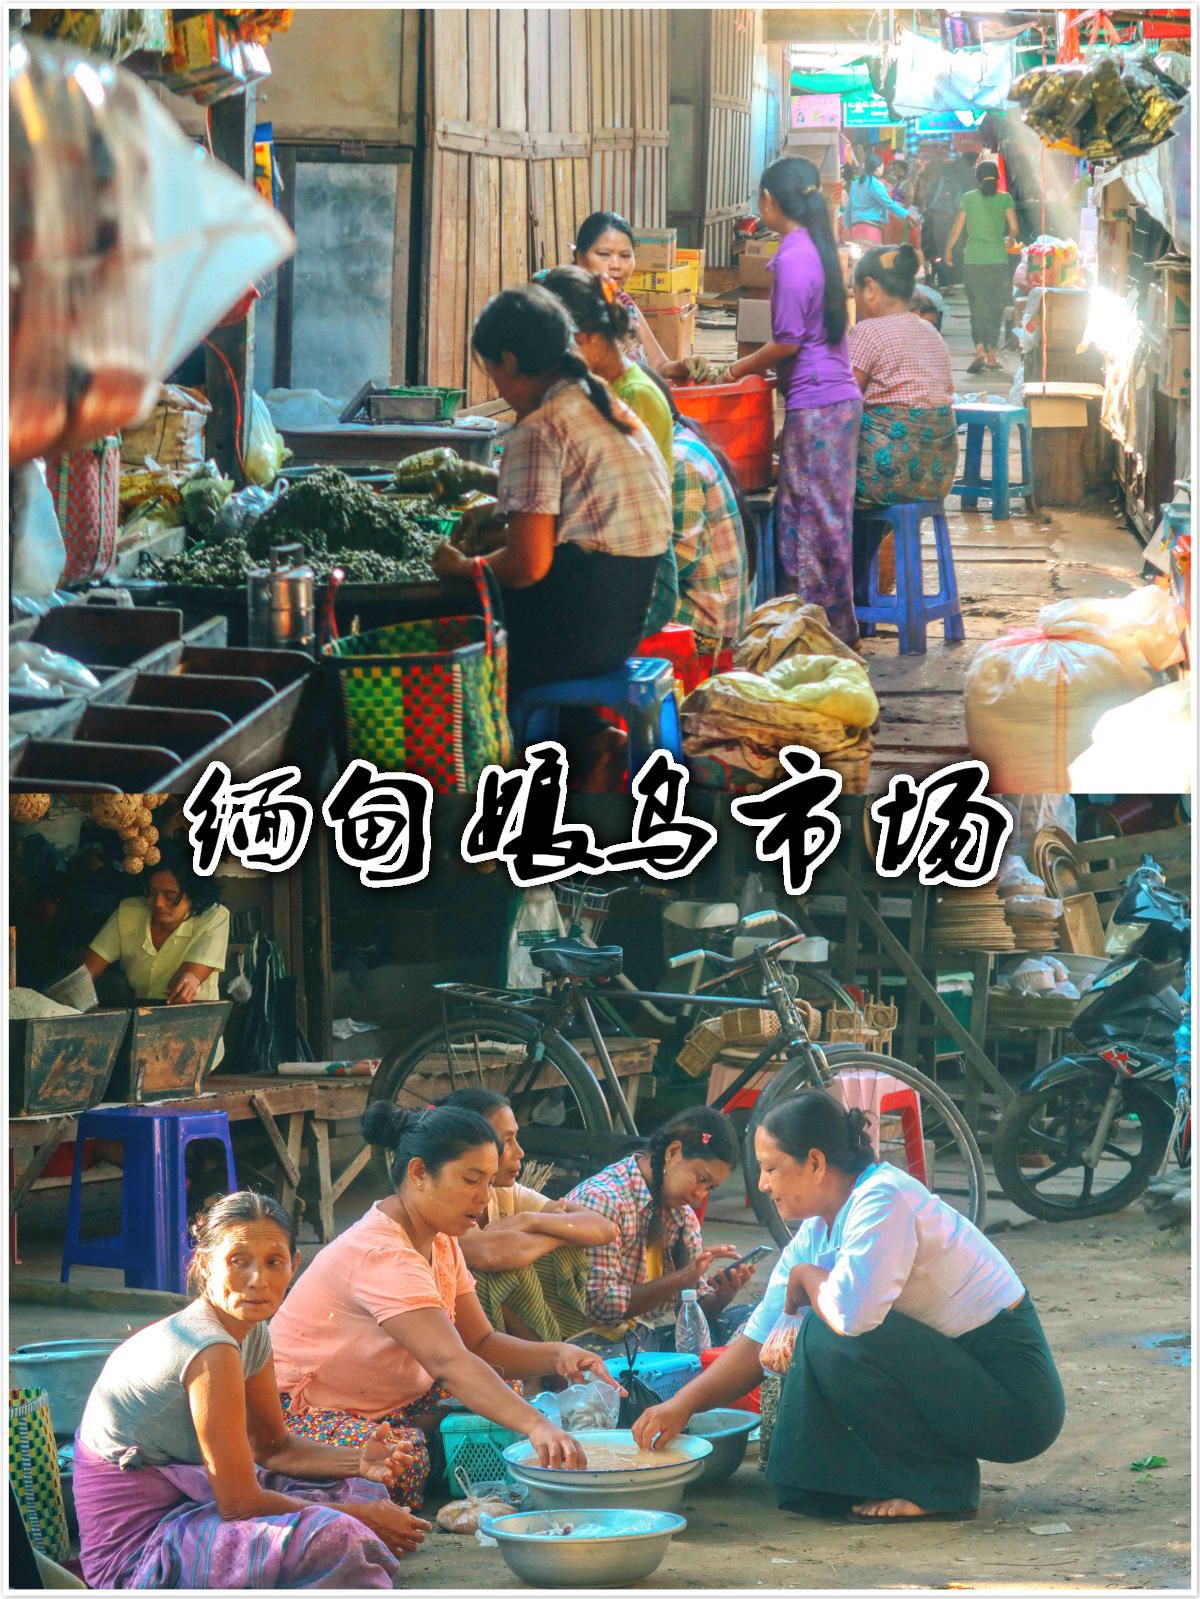 良乌市场是蒲甘最大的农贸市场，每天下午开始营业，来这里买菜基本上都是当地人，良乌市场不仅有农产品可以